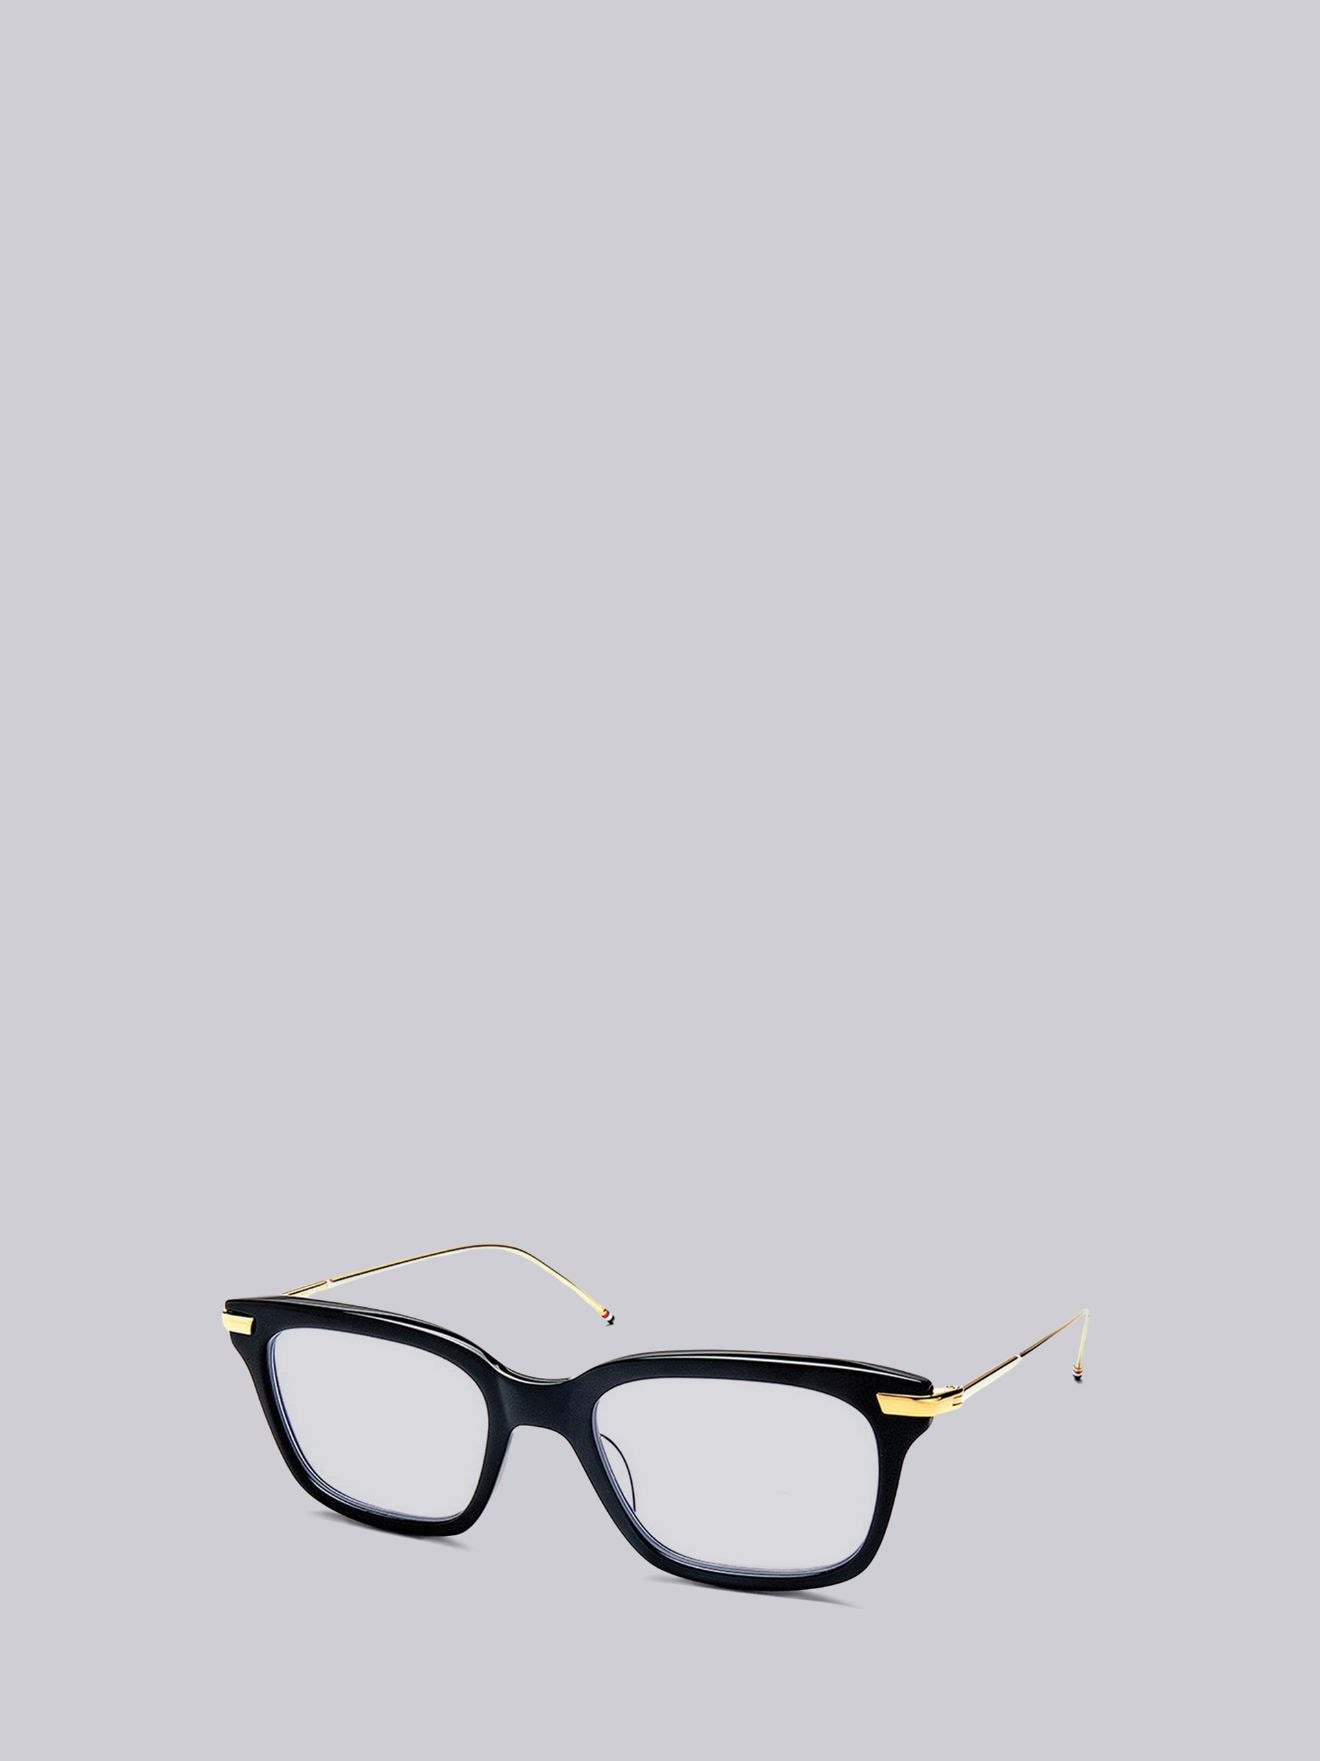 Black & Gold Optical Glasses | Thom Browne